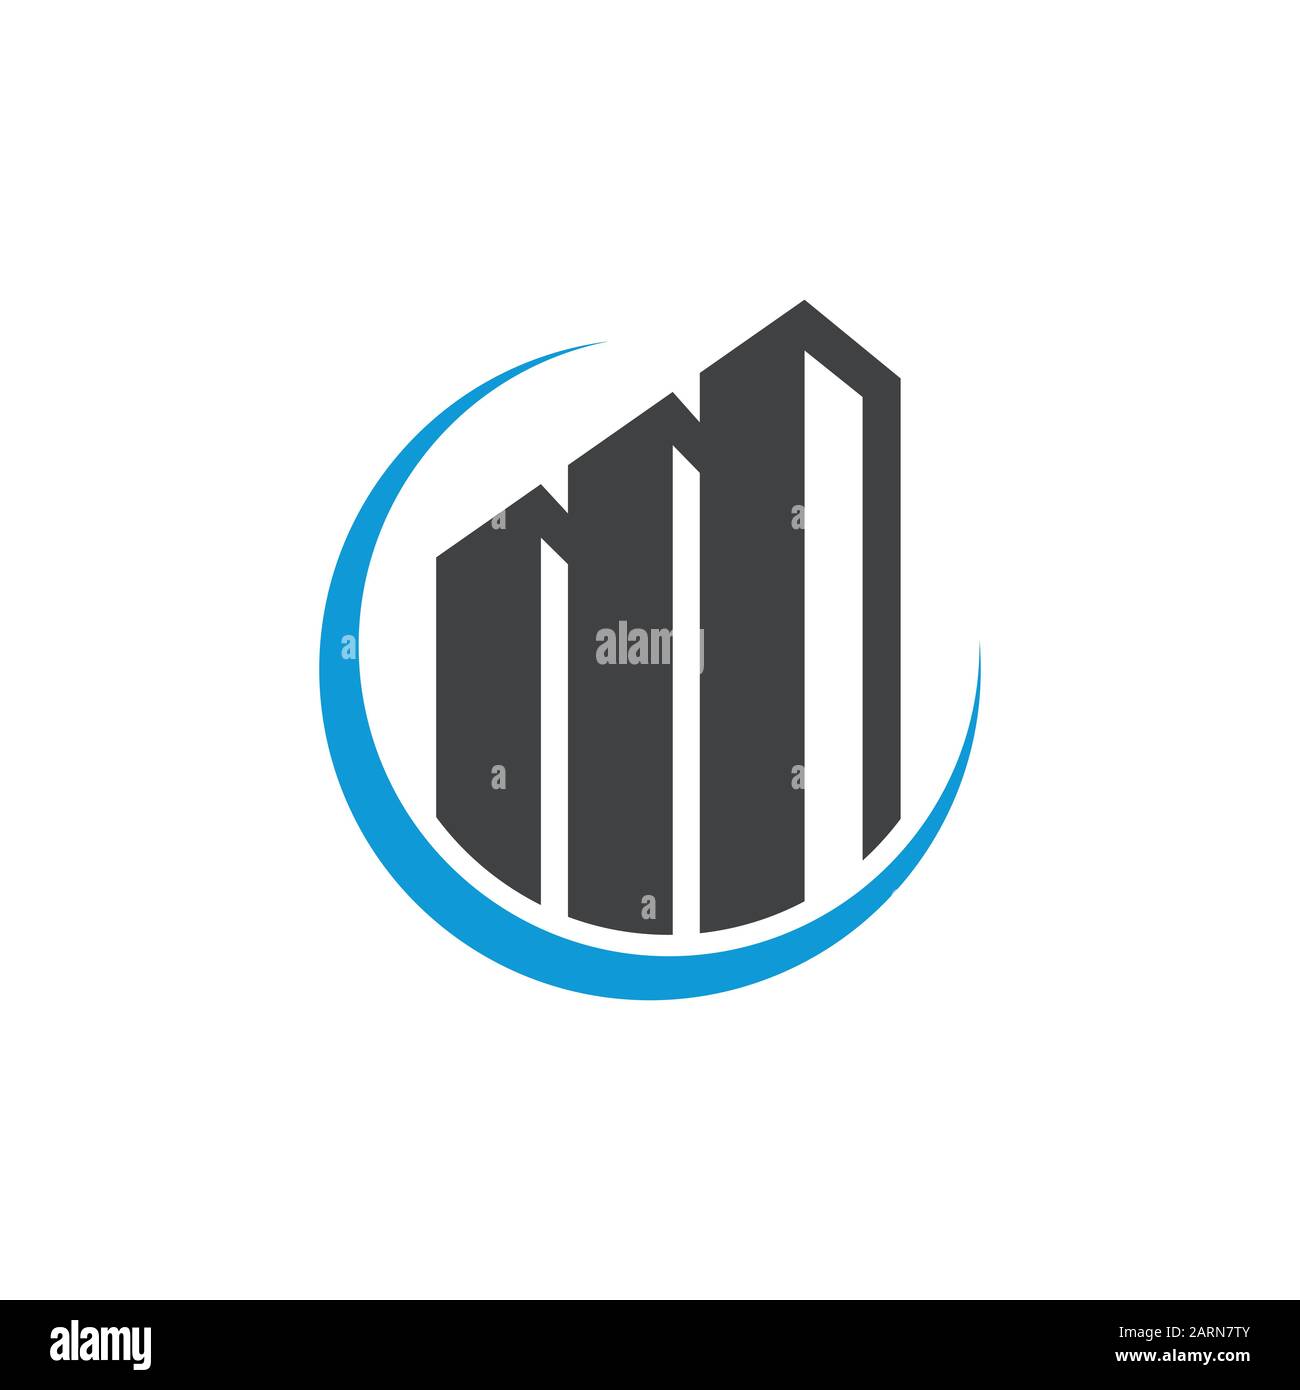 Vektorvorlage Für Das Real Estate Business Logo. Abstraktes Haus- oder Heimlogo. Gebäude-, Immobilien- und Baulogo. Stock Vektor